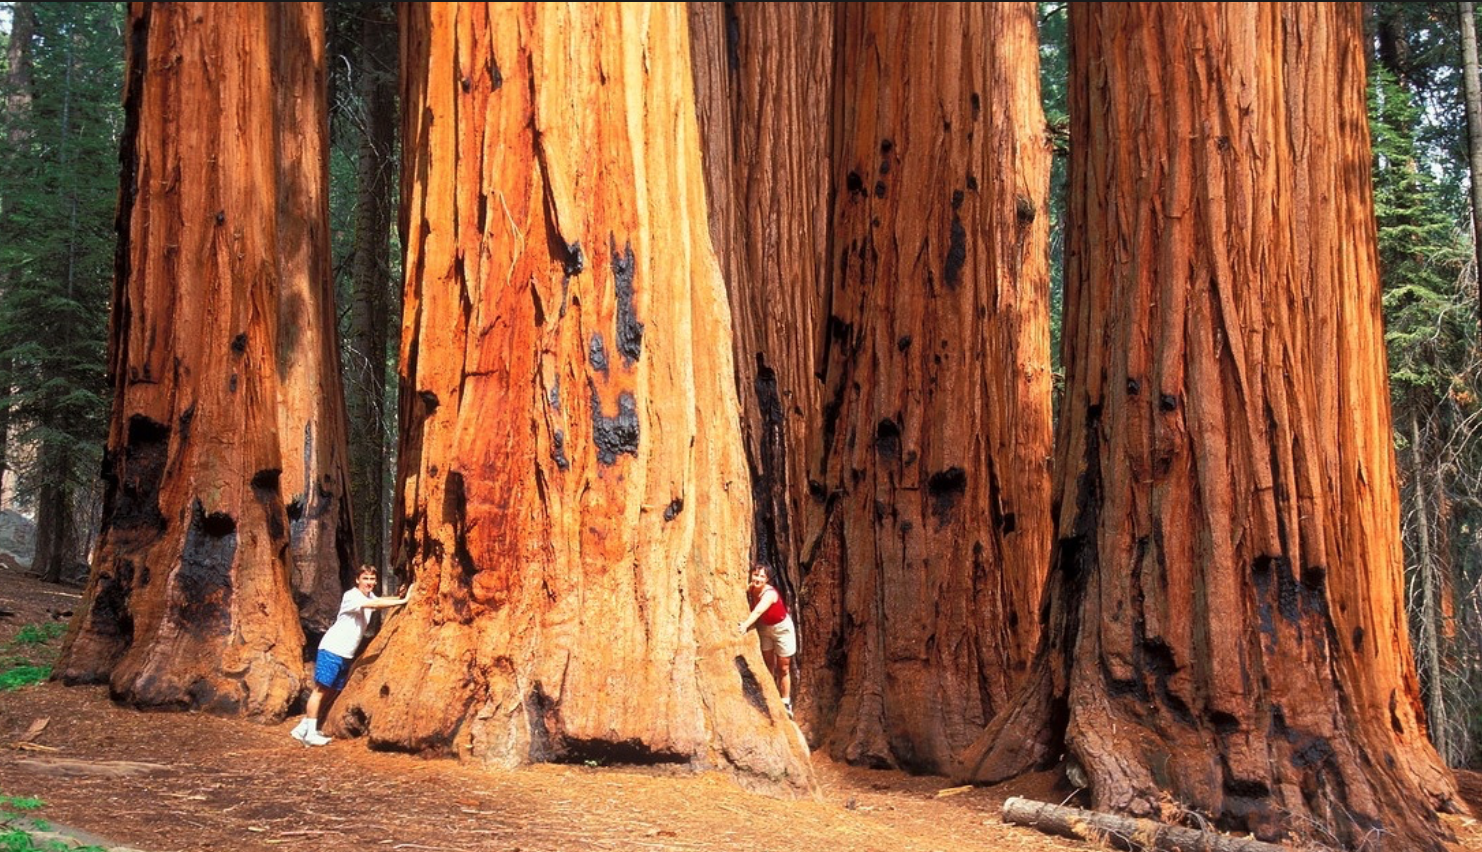 Громадные ели поднимались высоко. Секвойя дерево гигант. Парк Секвойя Калифорния. Секвойя Северной Америки. Красное дерево Секвойя.